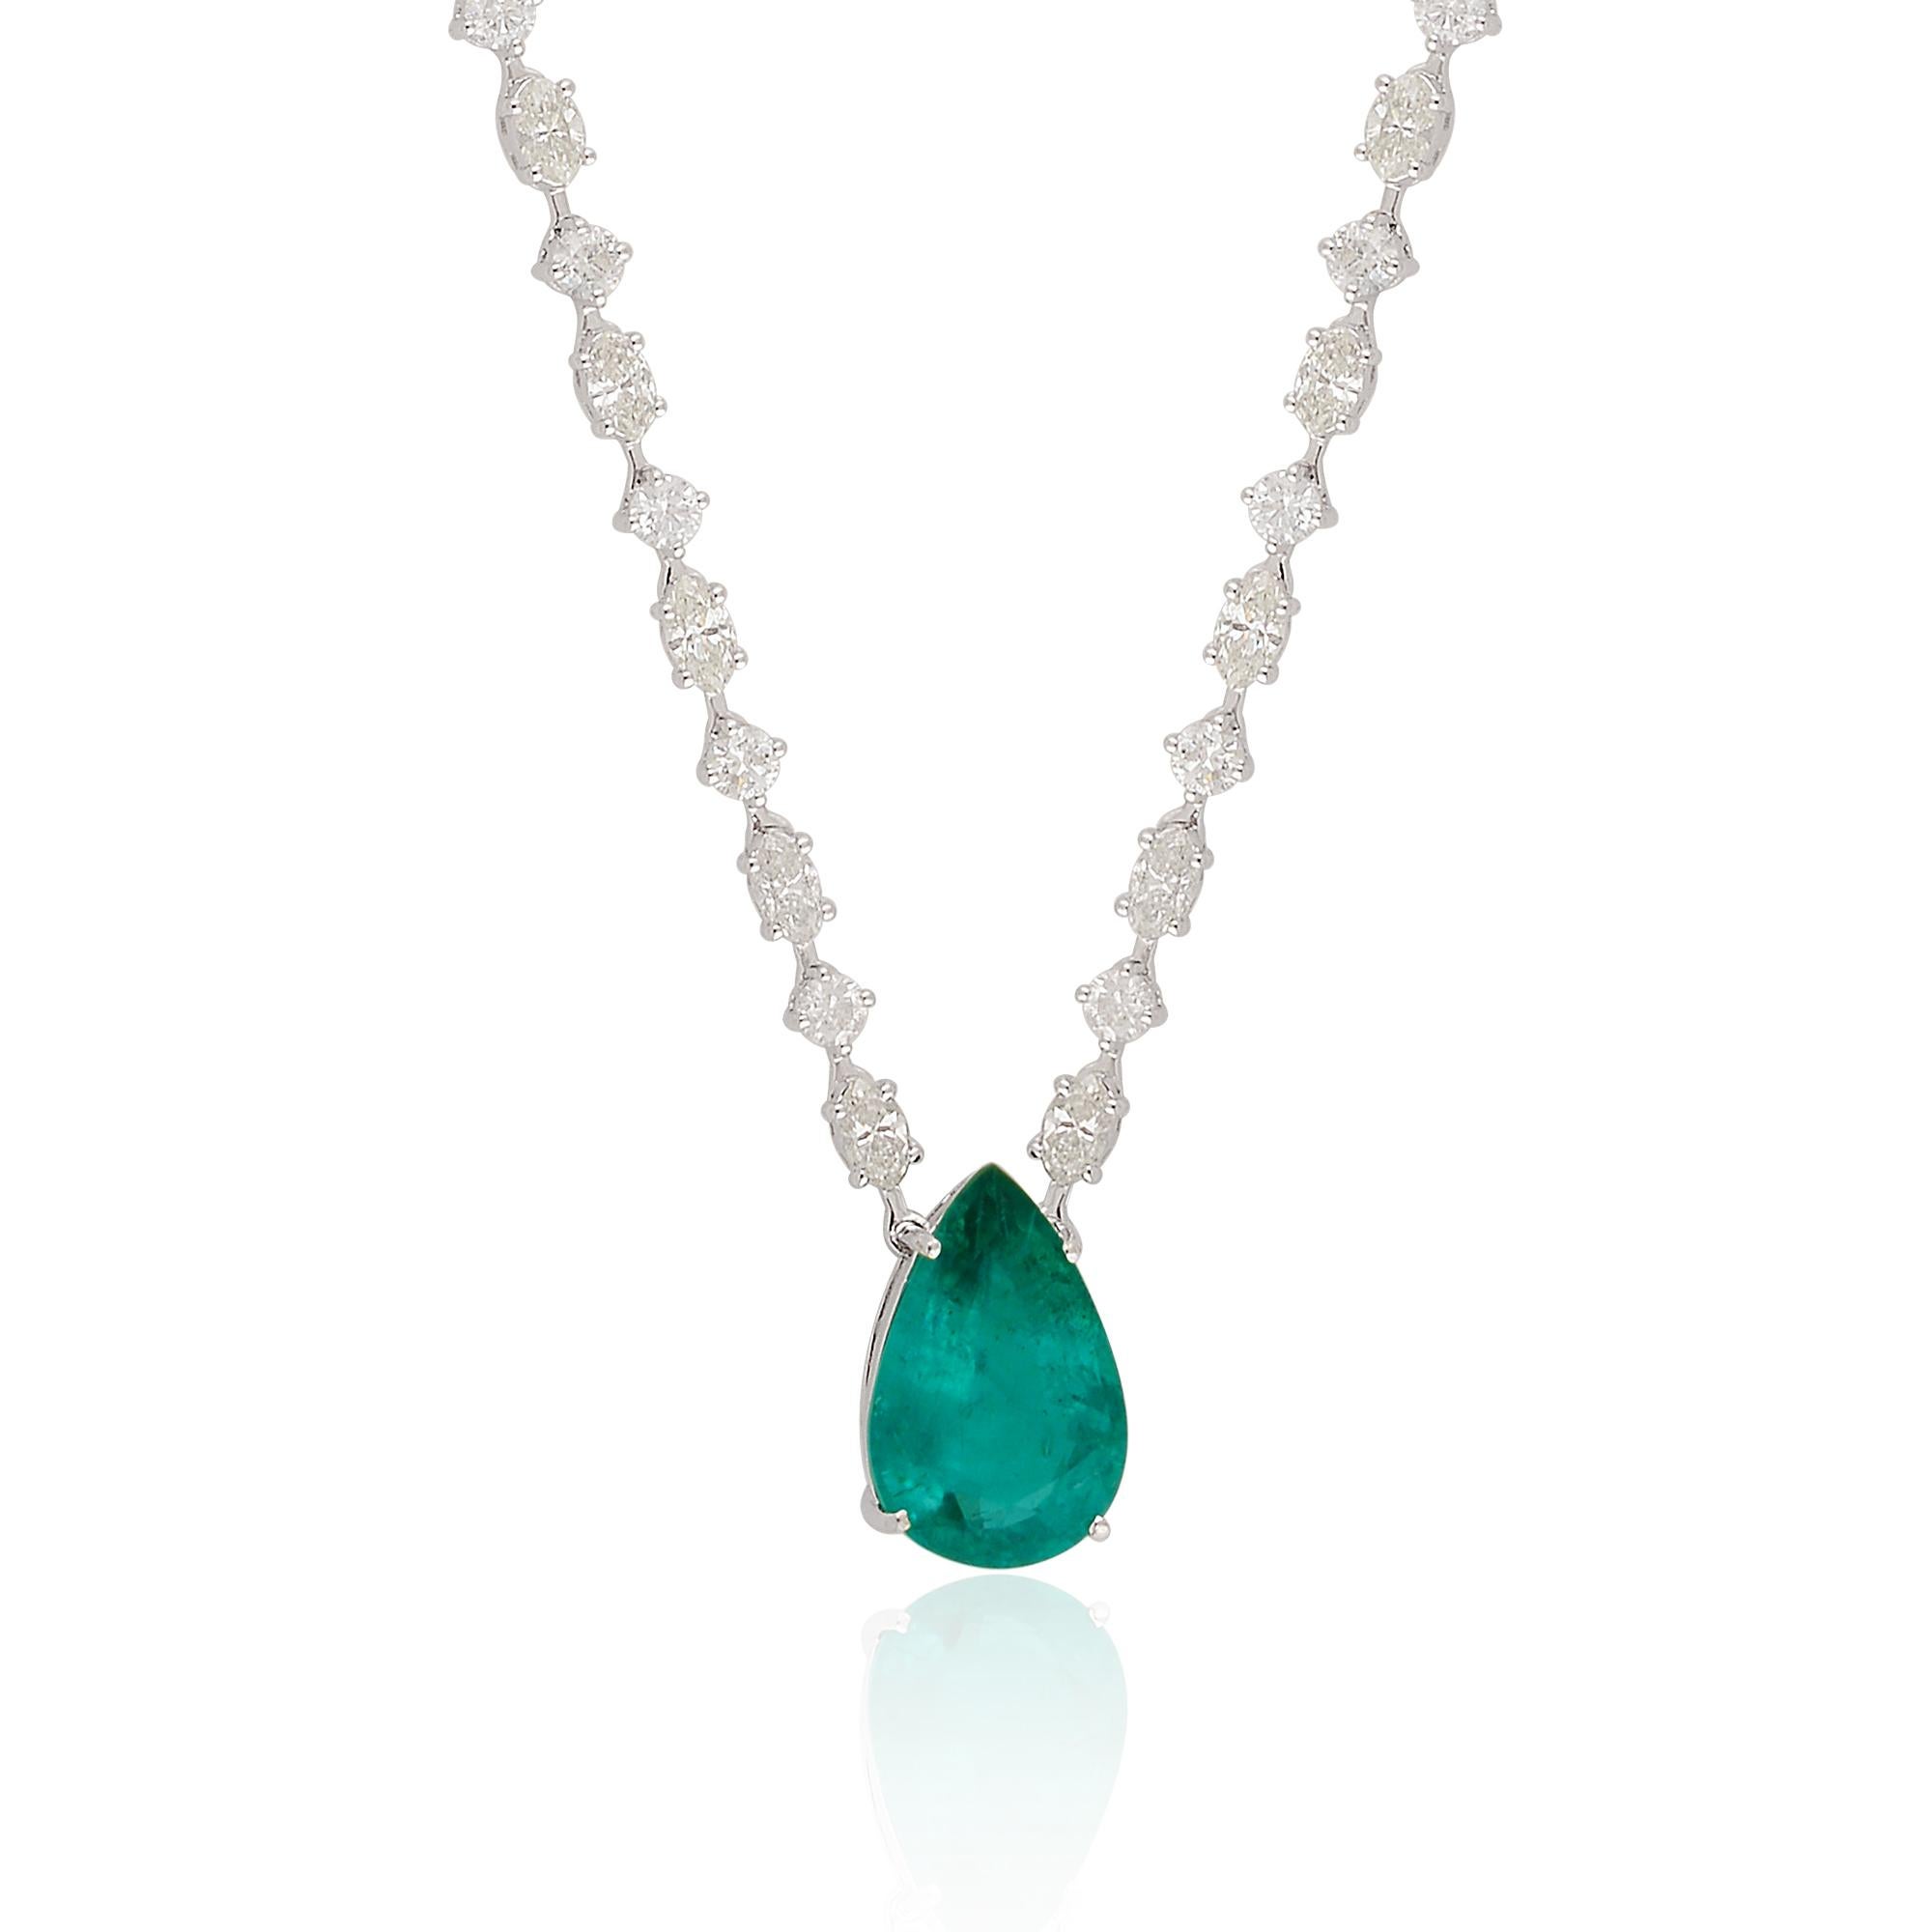 Ce collier avec pendentif en émeraude zambienne en forme de poire et accents en diamant est un véritable témoignage d'un travail artisanal de qualité et d'une sélection exceptionnelle de pierres précieuses. Il respire la sophistication et le luxe,